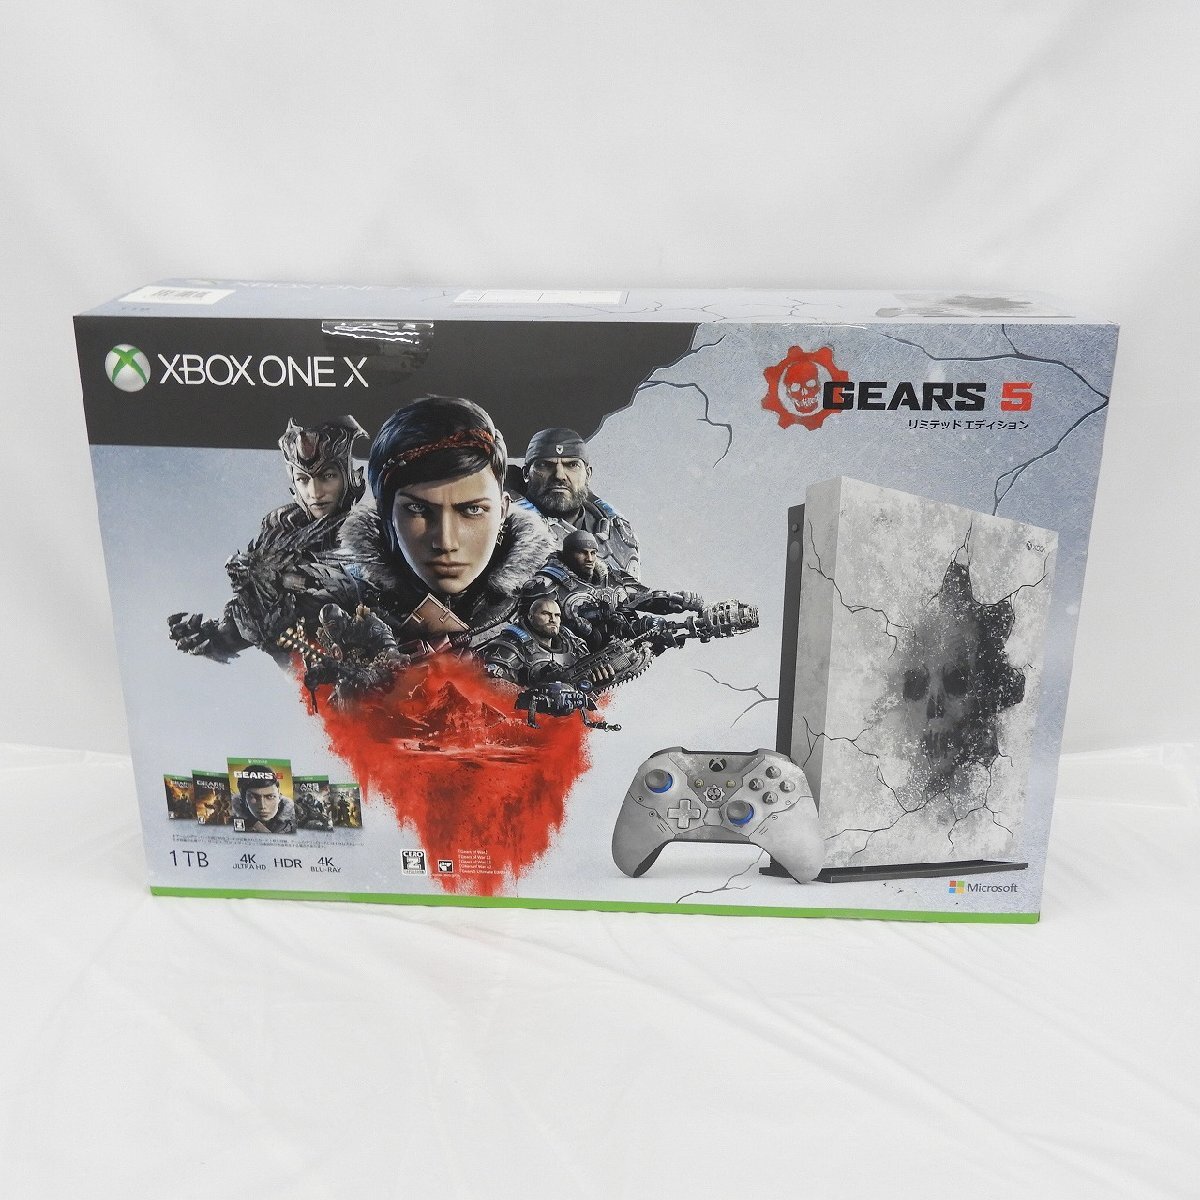 【開封済/未使用品】Microsoft マイクロソフト Xbox One X Gears 5 リミテッド エディション FMP-00145 1TB 11533555 0324